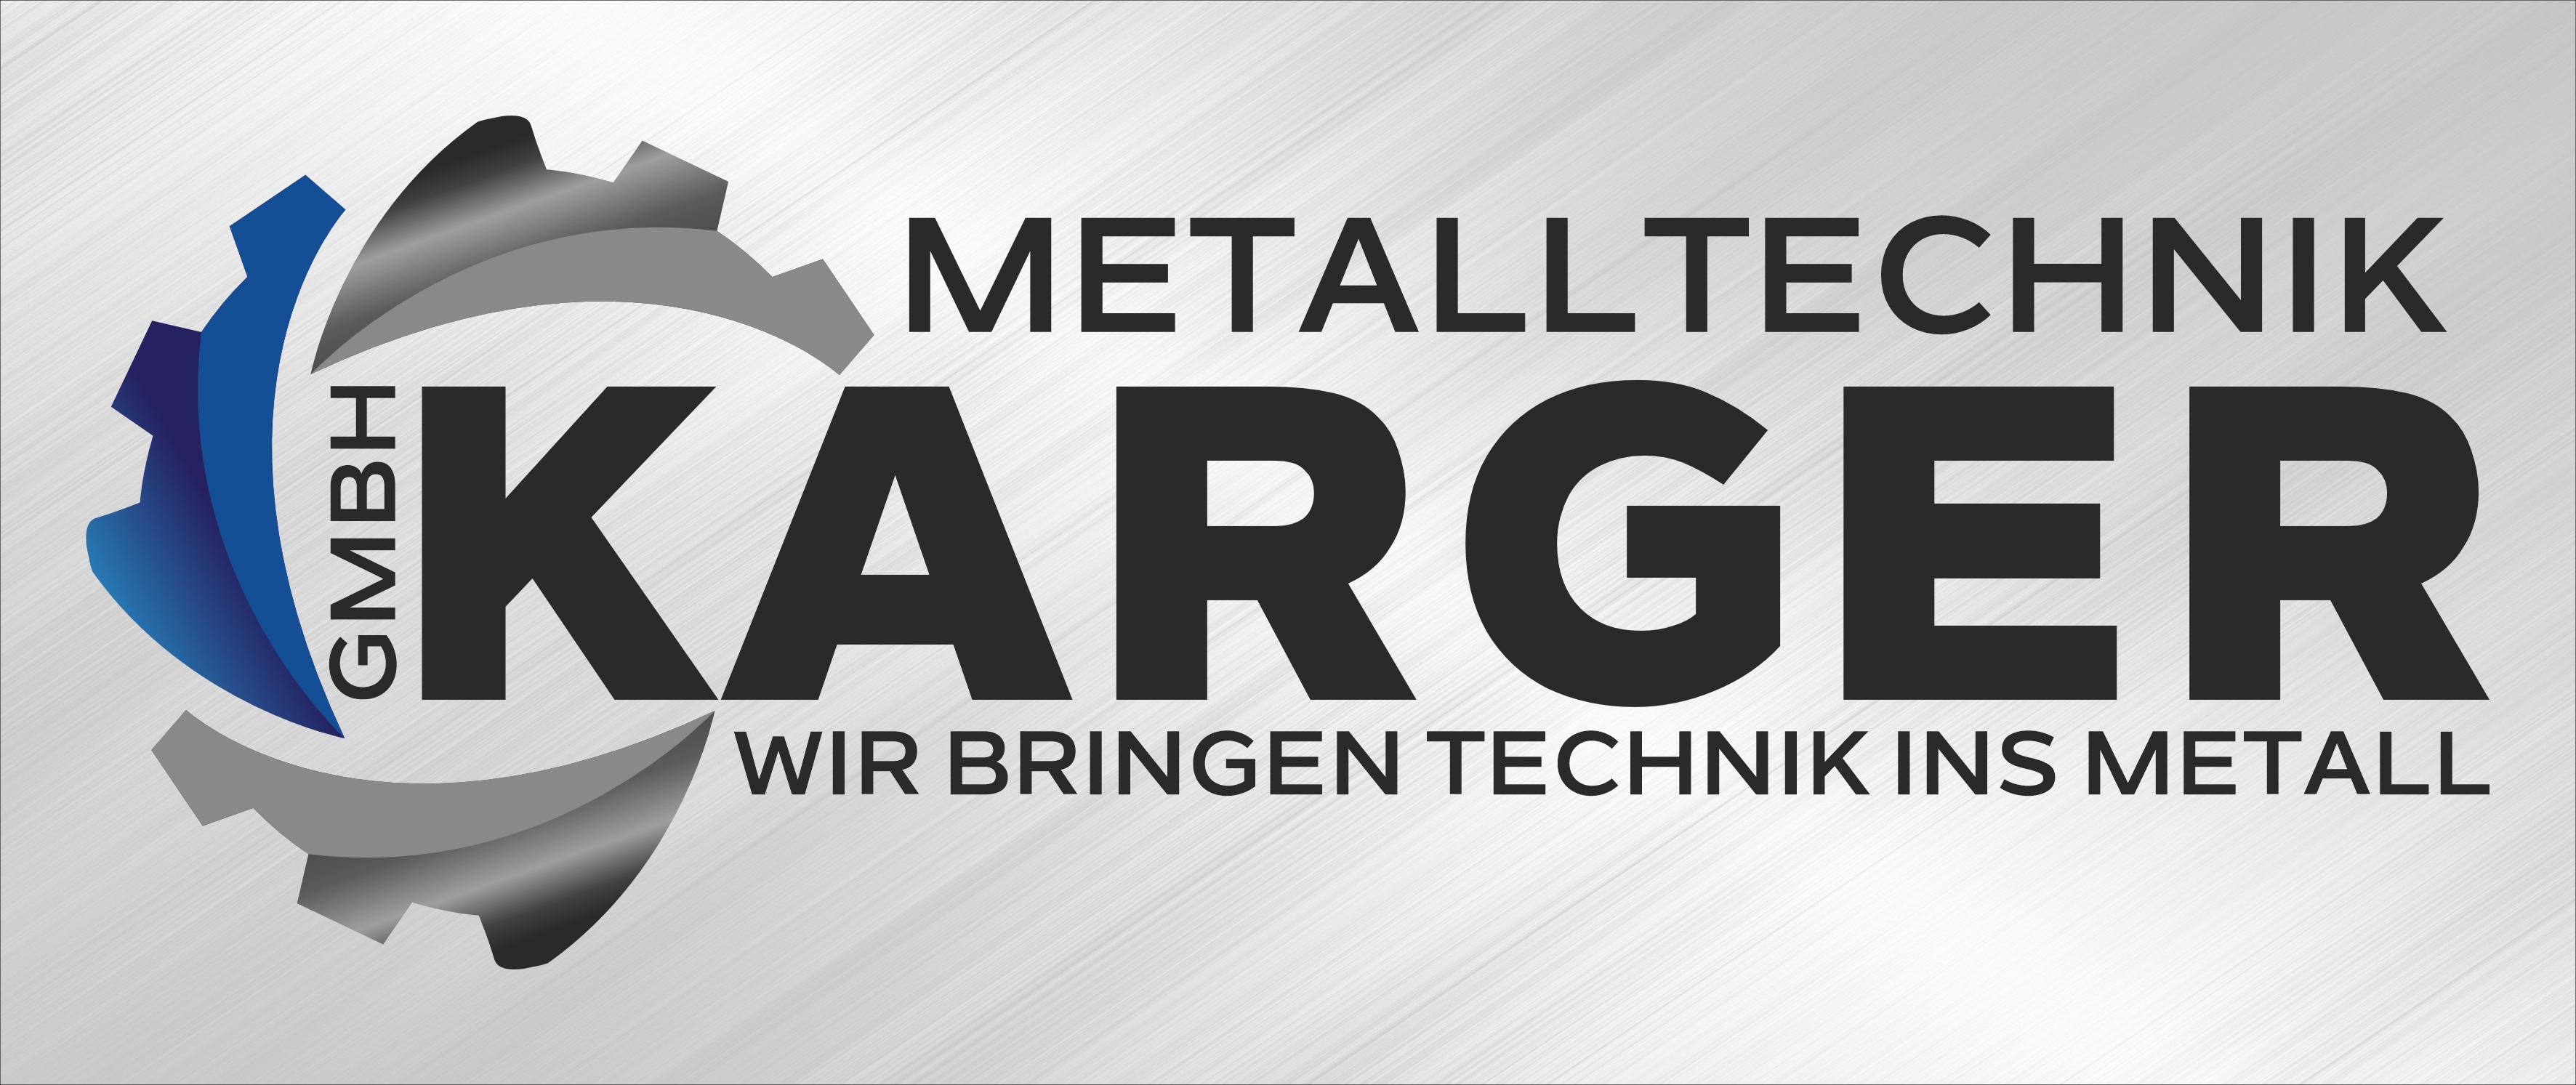 Metalltechnik Karger GmbH